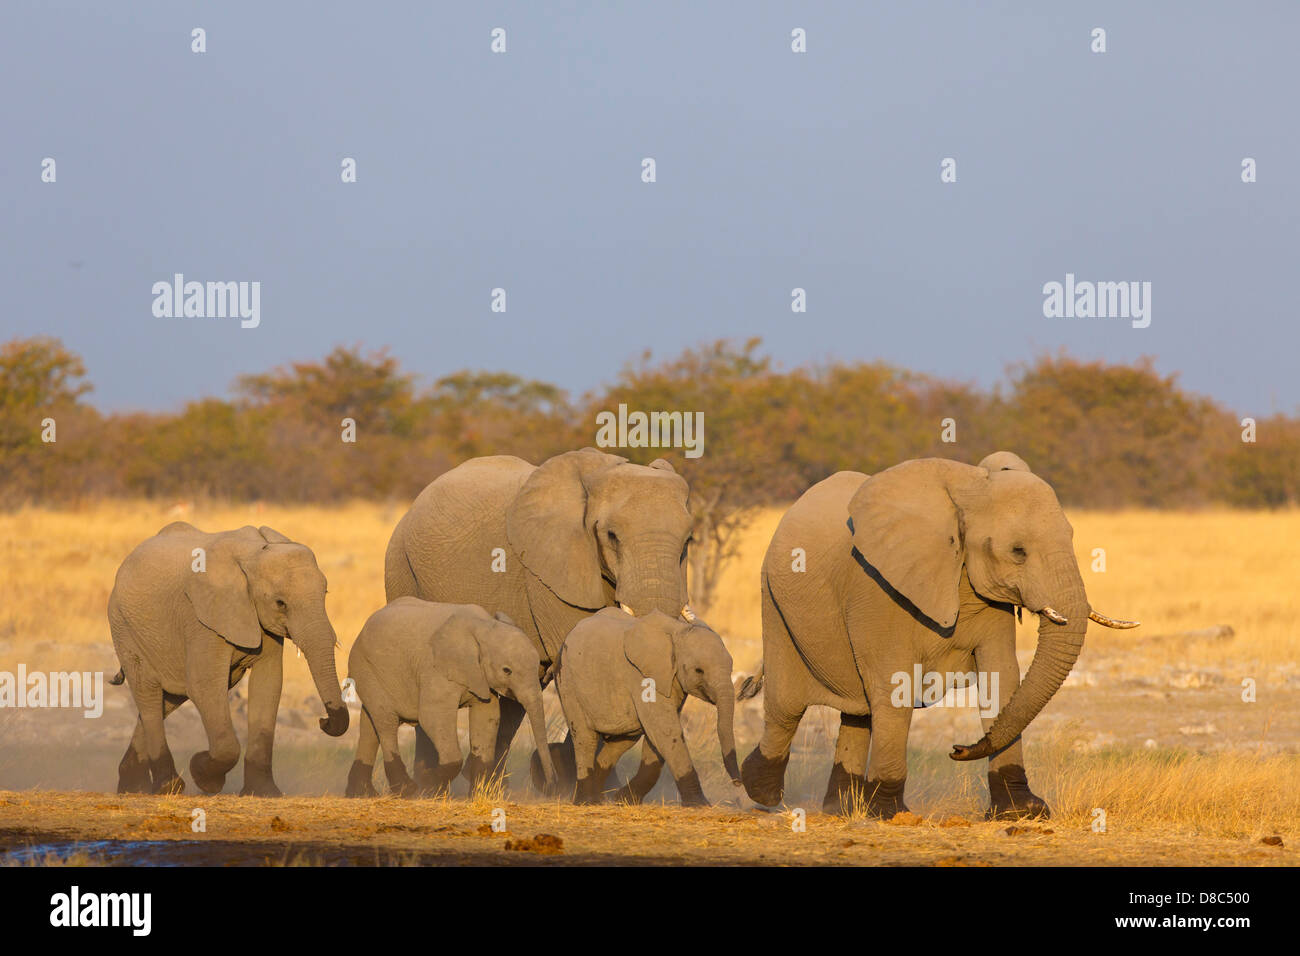 Grupo de elefantes bush africano (Loxodonta africana), Rietfontein, Namibia Foto de stock